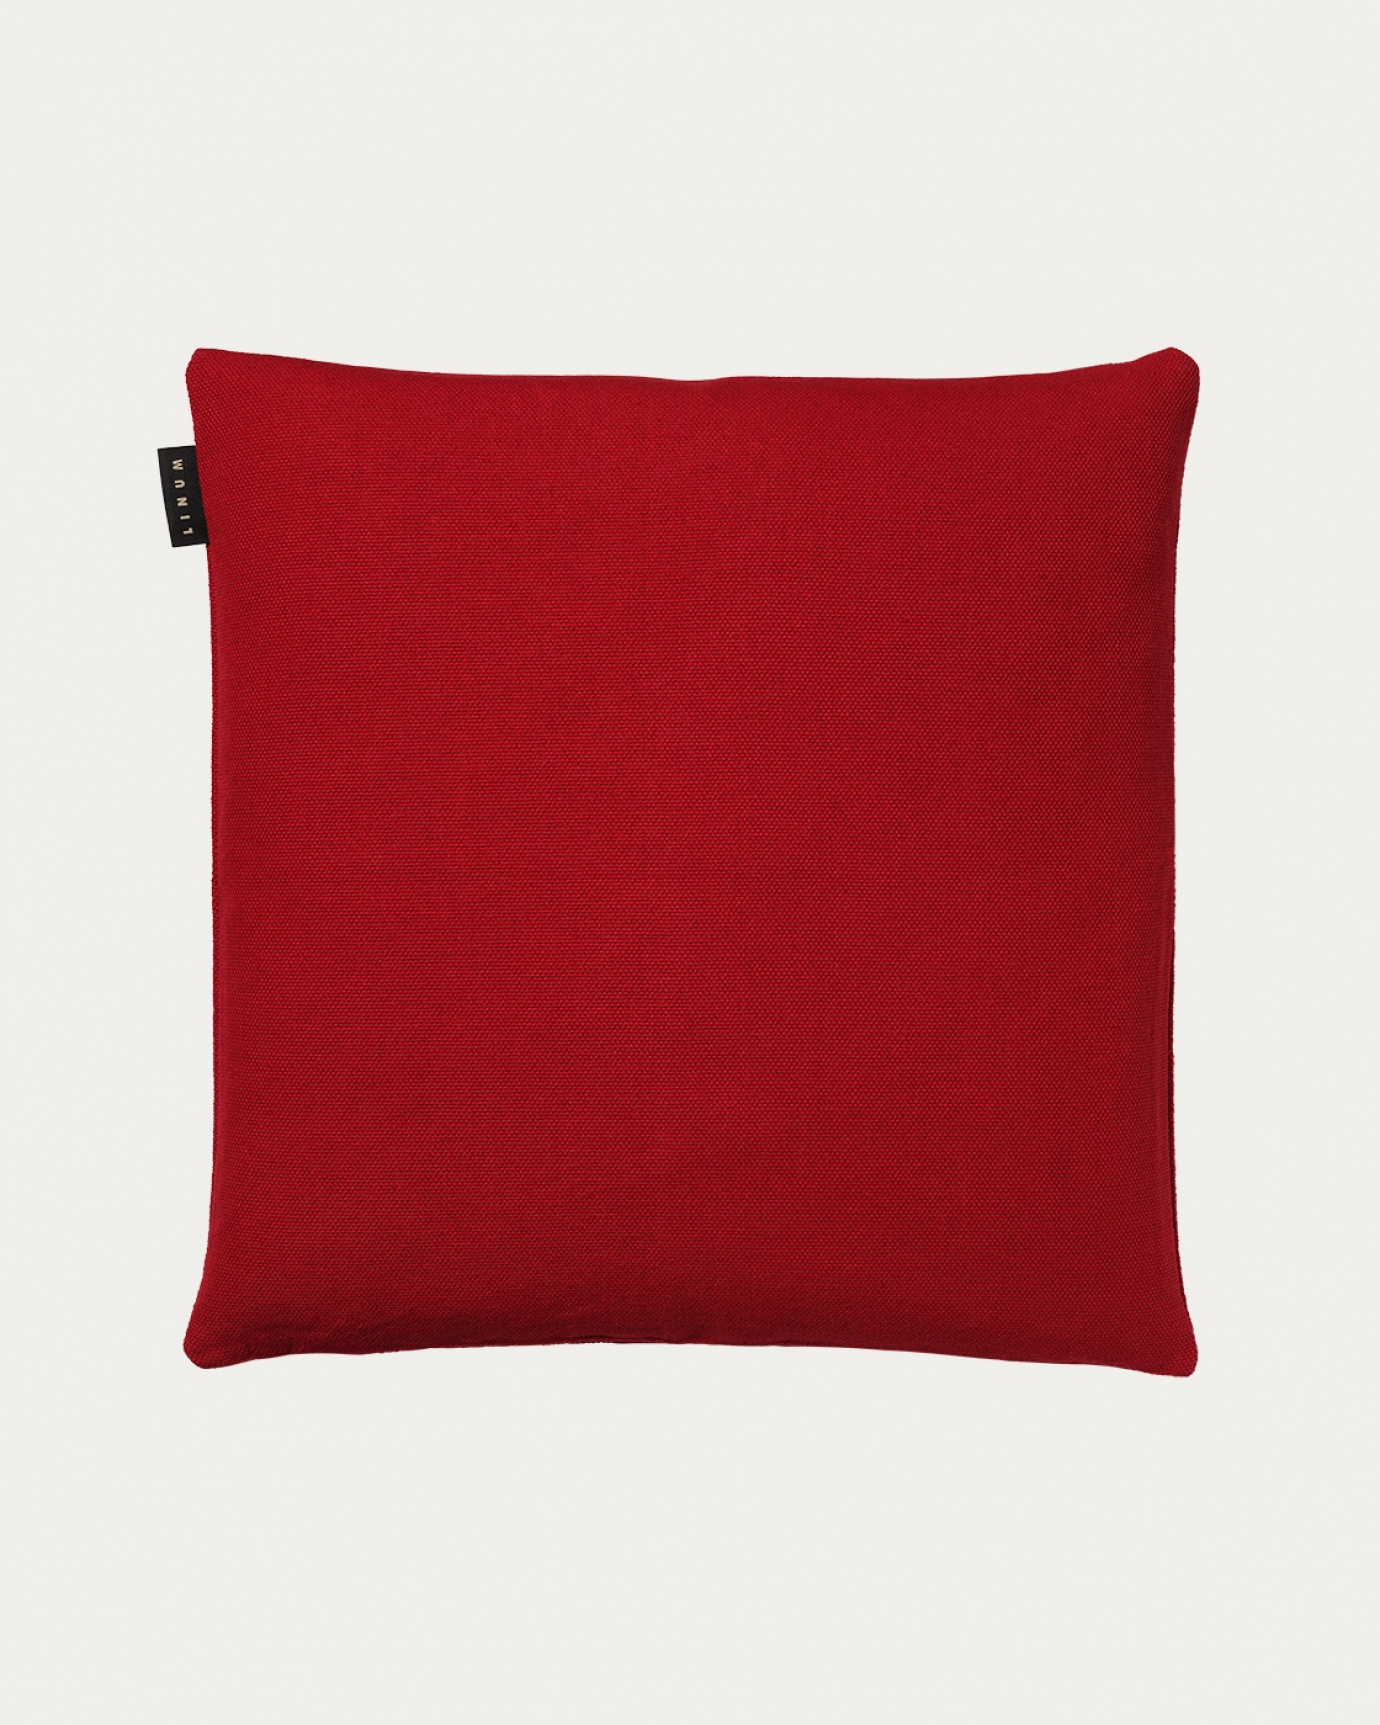 Immagine prodotto rosso PEPPER copricuscini in morbido cotone di LINUM DESIGN. Facile da lavare e resistente per generazioni. Dimensioni 50x50 cm.